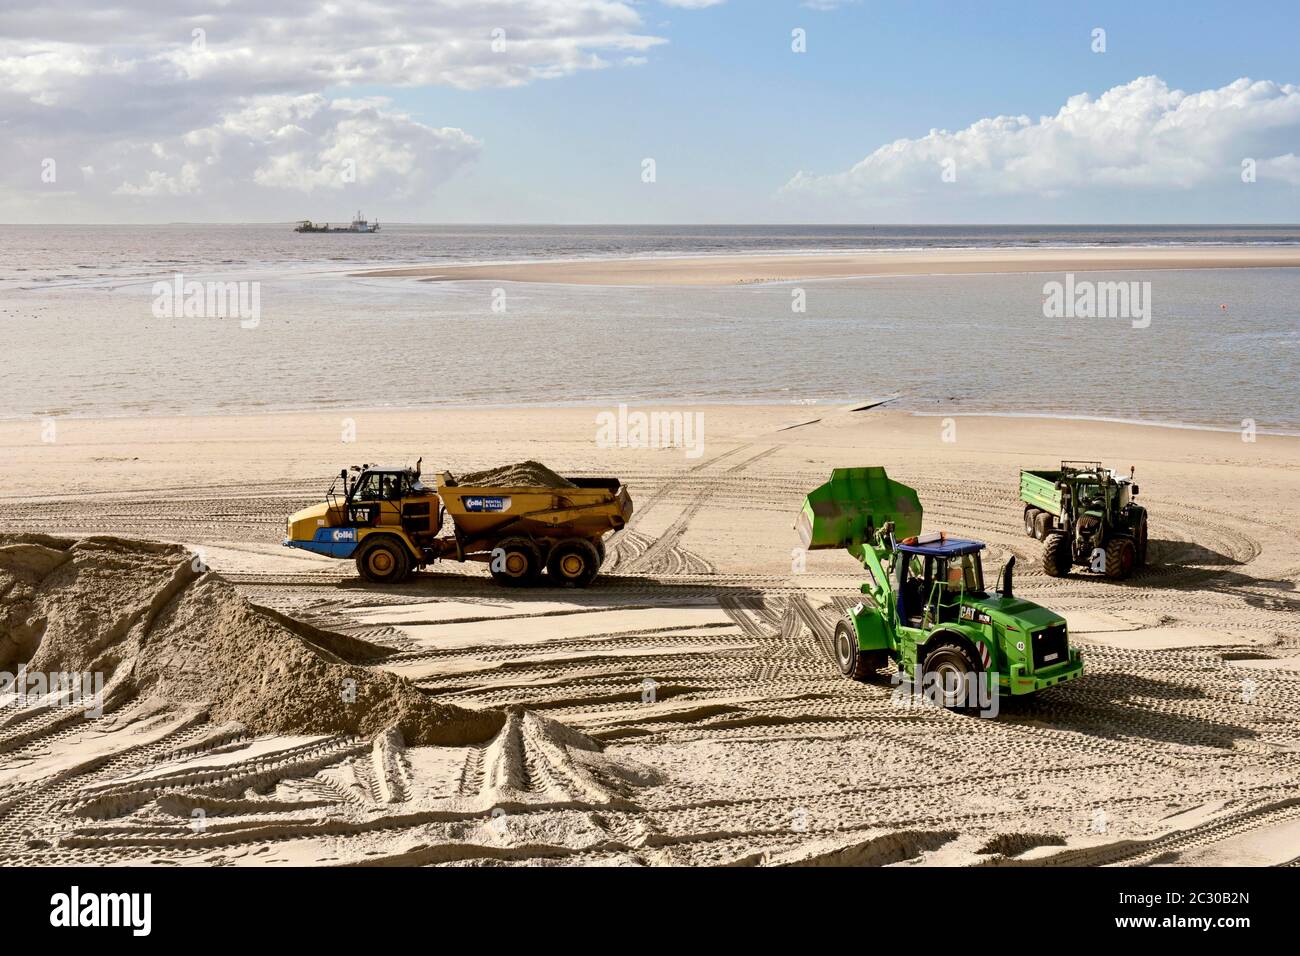 Arbeiten am Strand, Sand wird mit Traktor am Badestrand verteilt, Borkum, Ostfriesische Insel, Niedersachsen, Deutschland Stock Photo